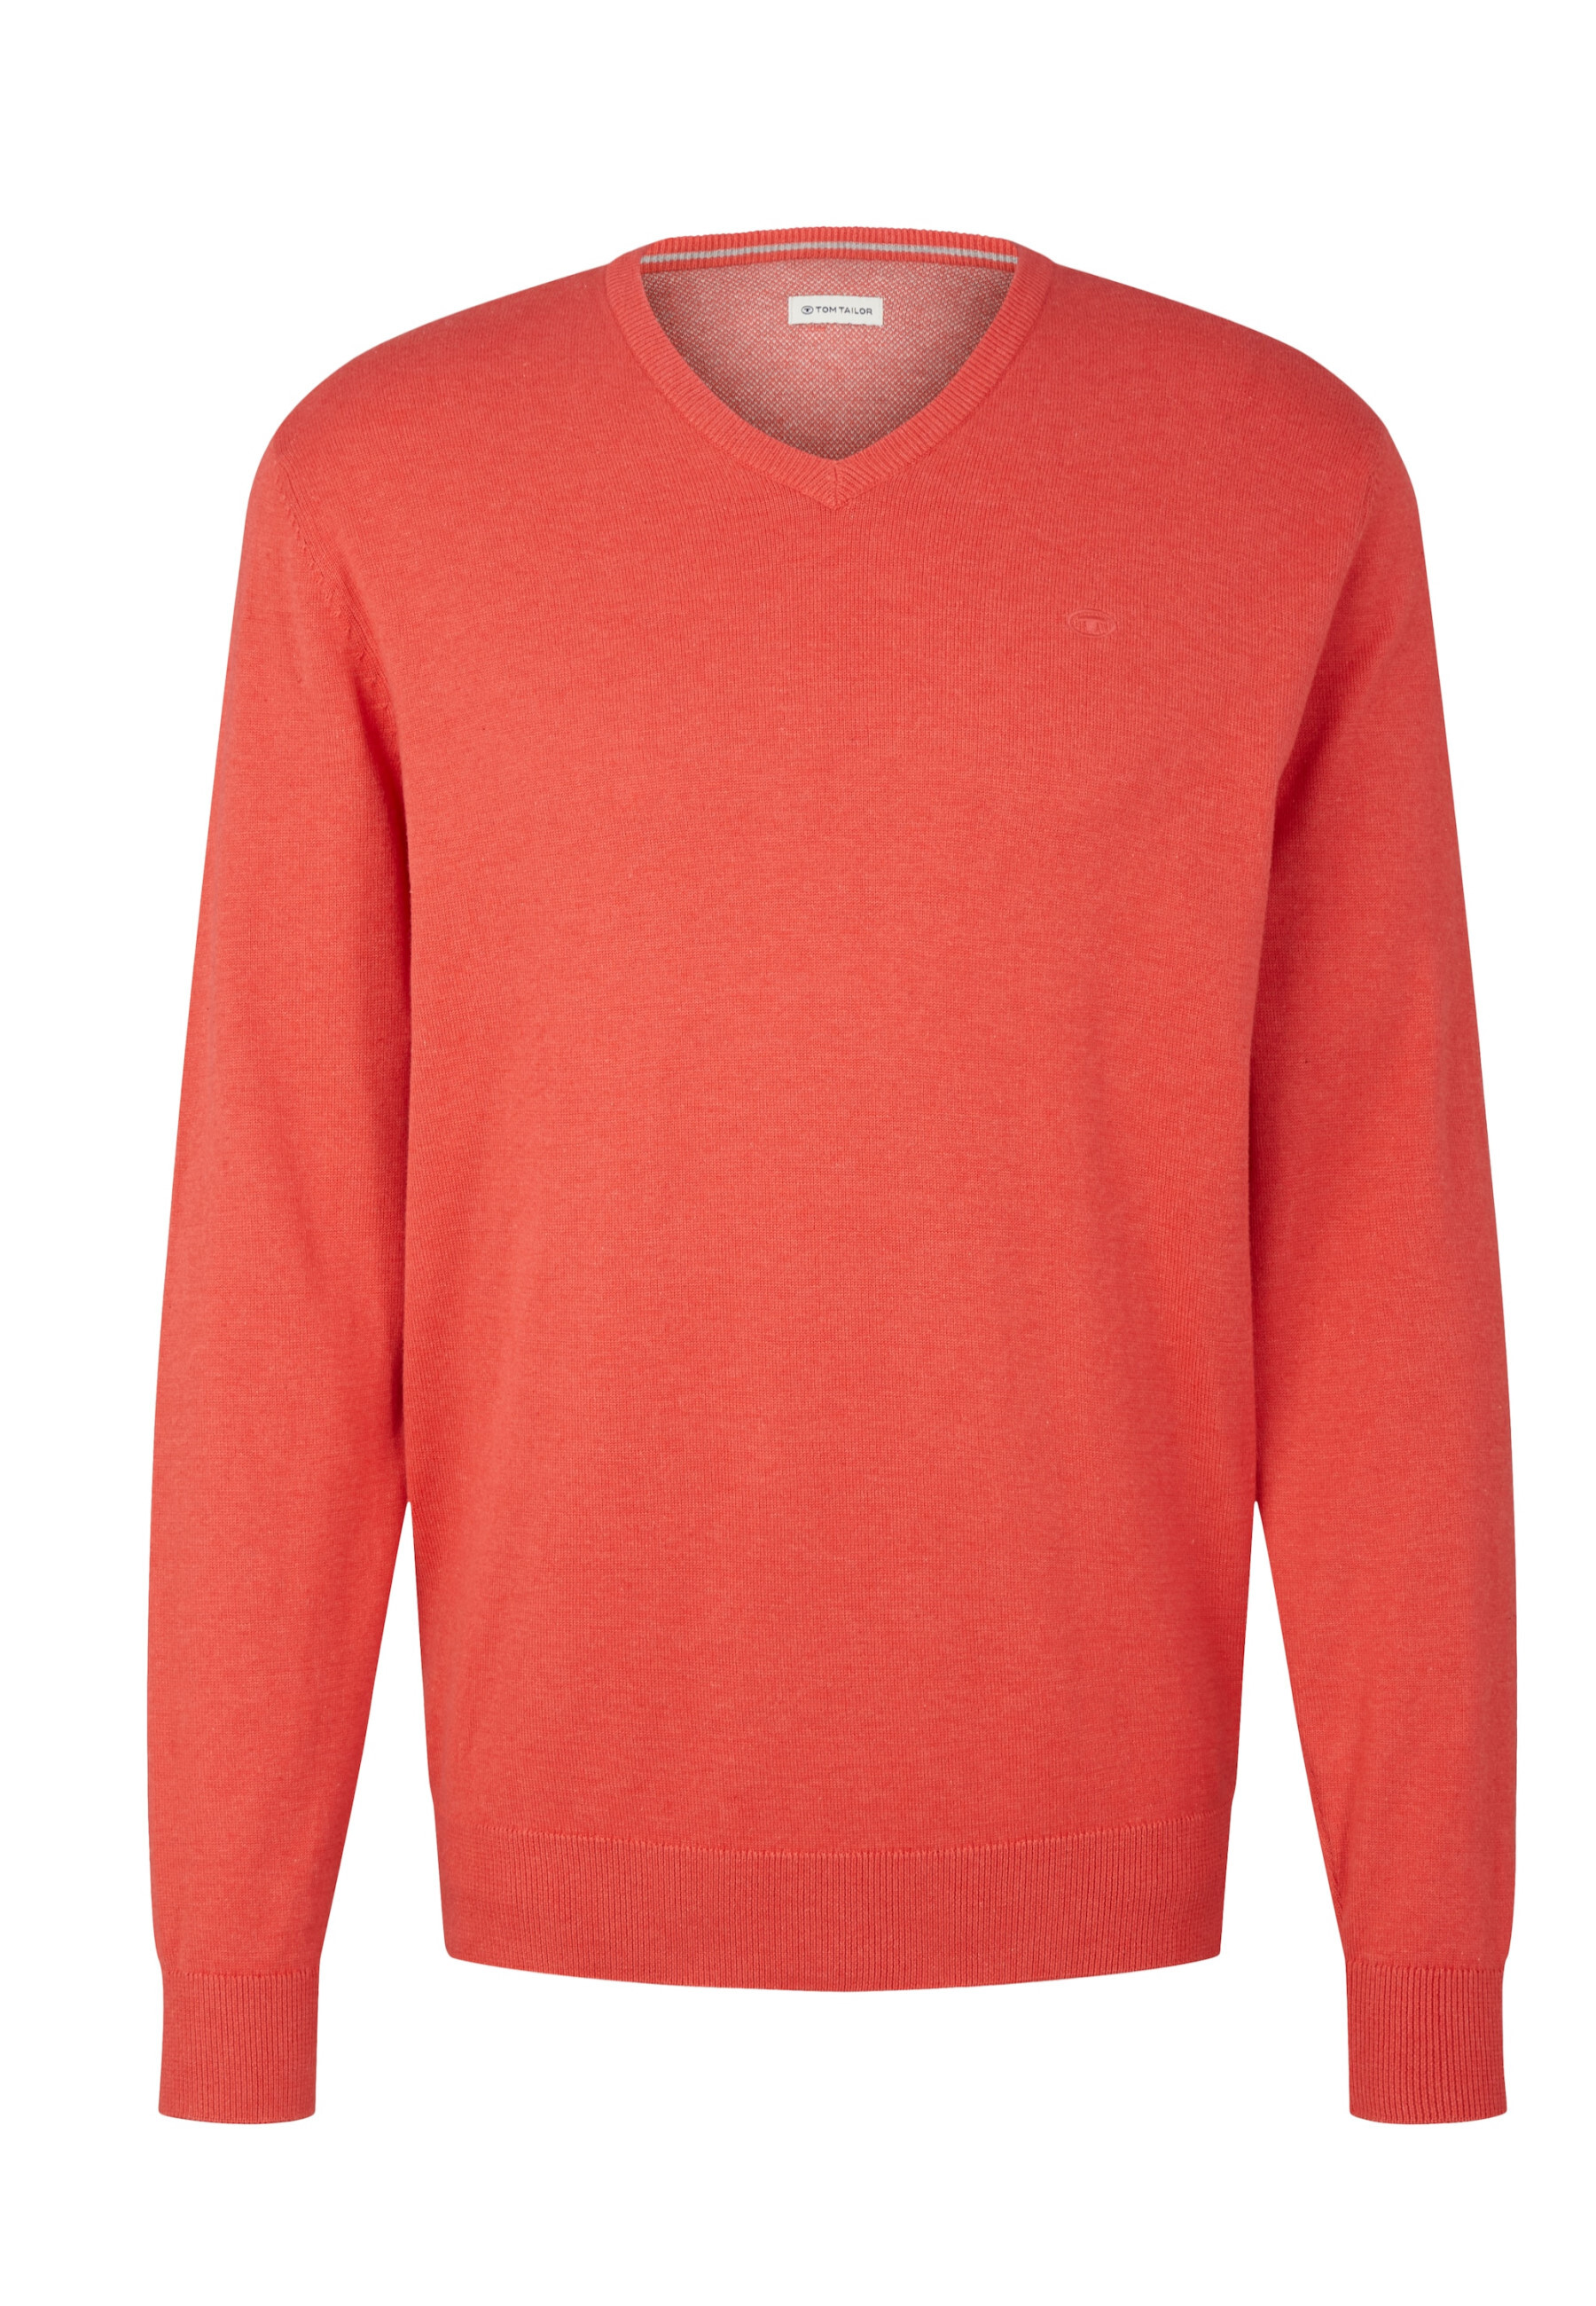 Пуловер Tom Tailor, красный пуловер tom tailor красный